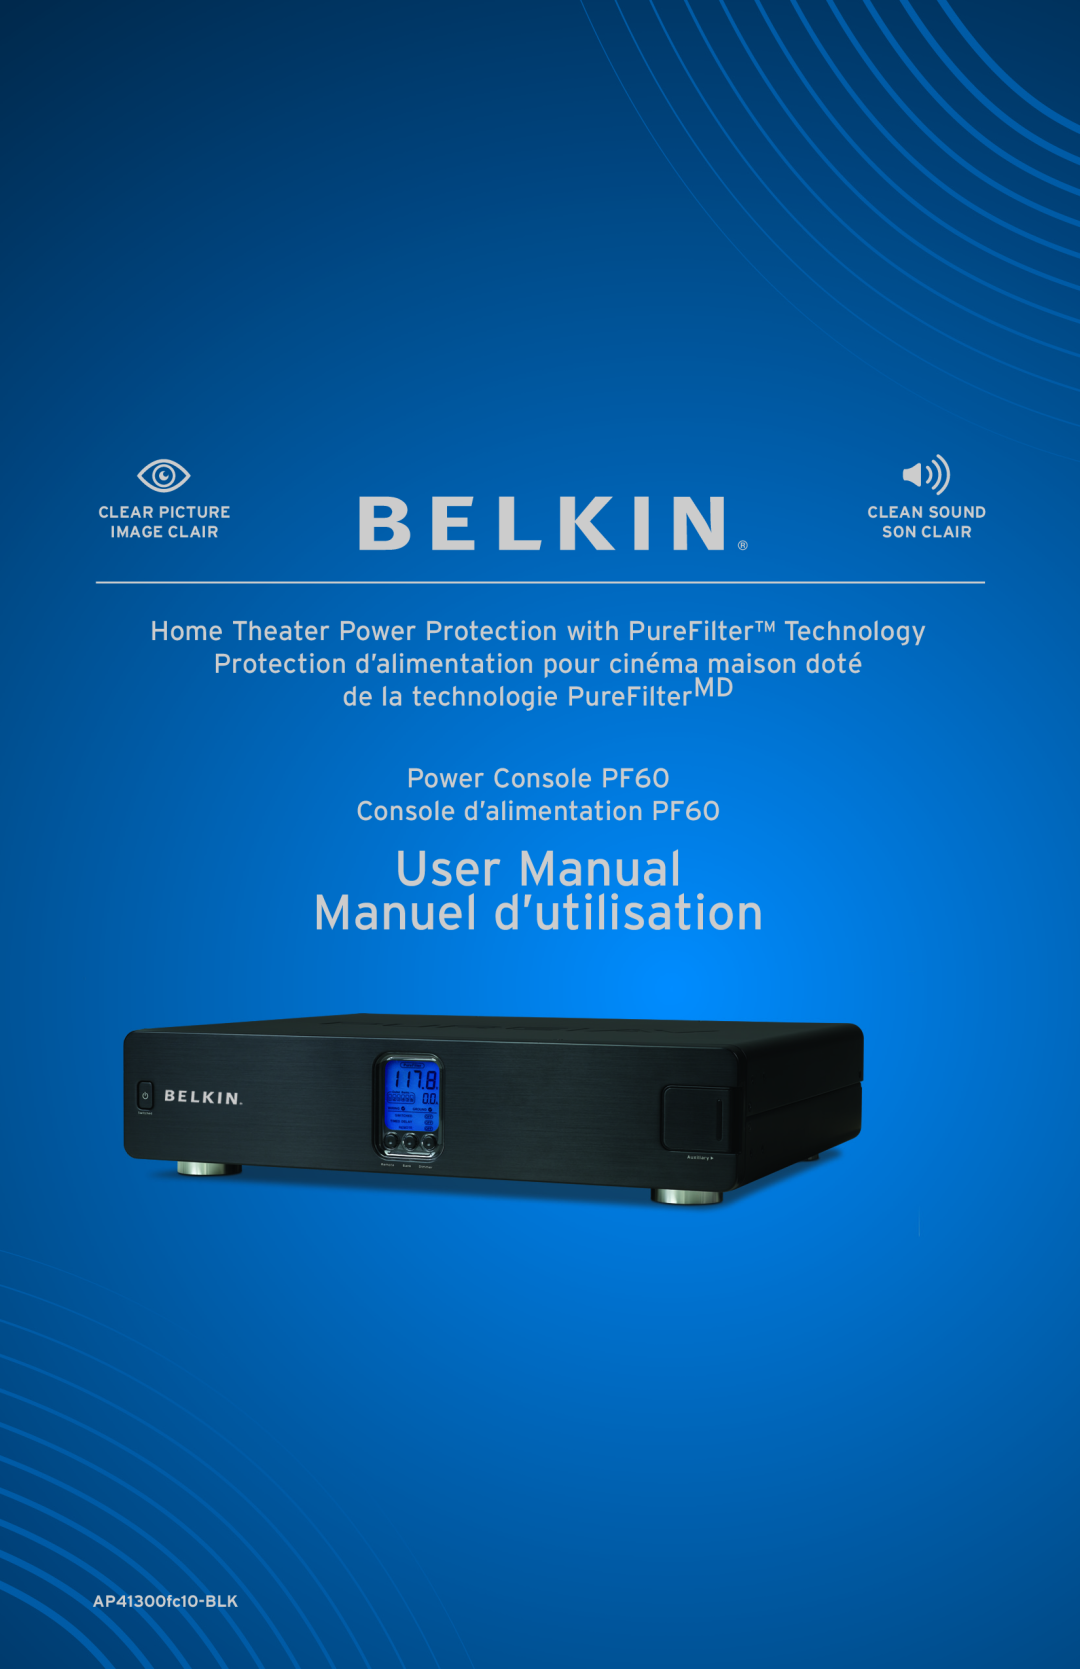 Belkin AP41300fc12-BLK user manual Protection d’alimentation pour cinéma maison doté, Console d’alimentation PF60 